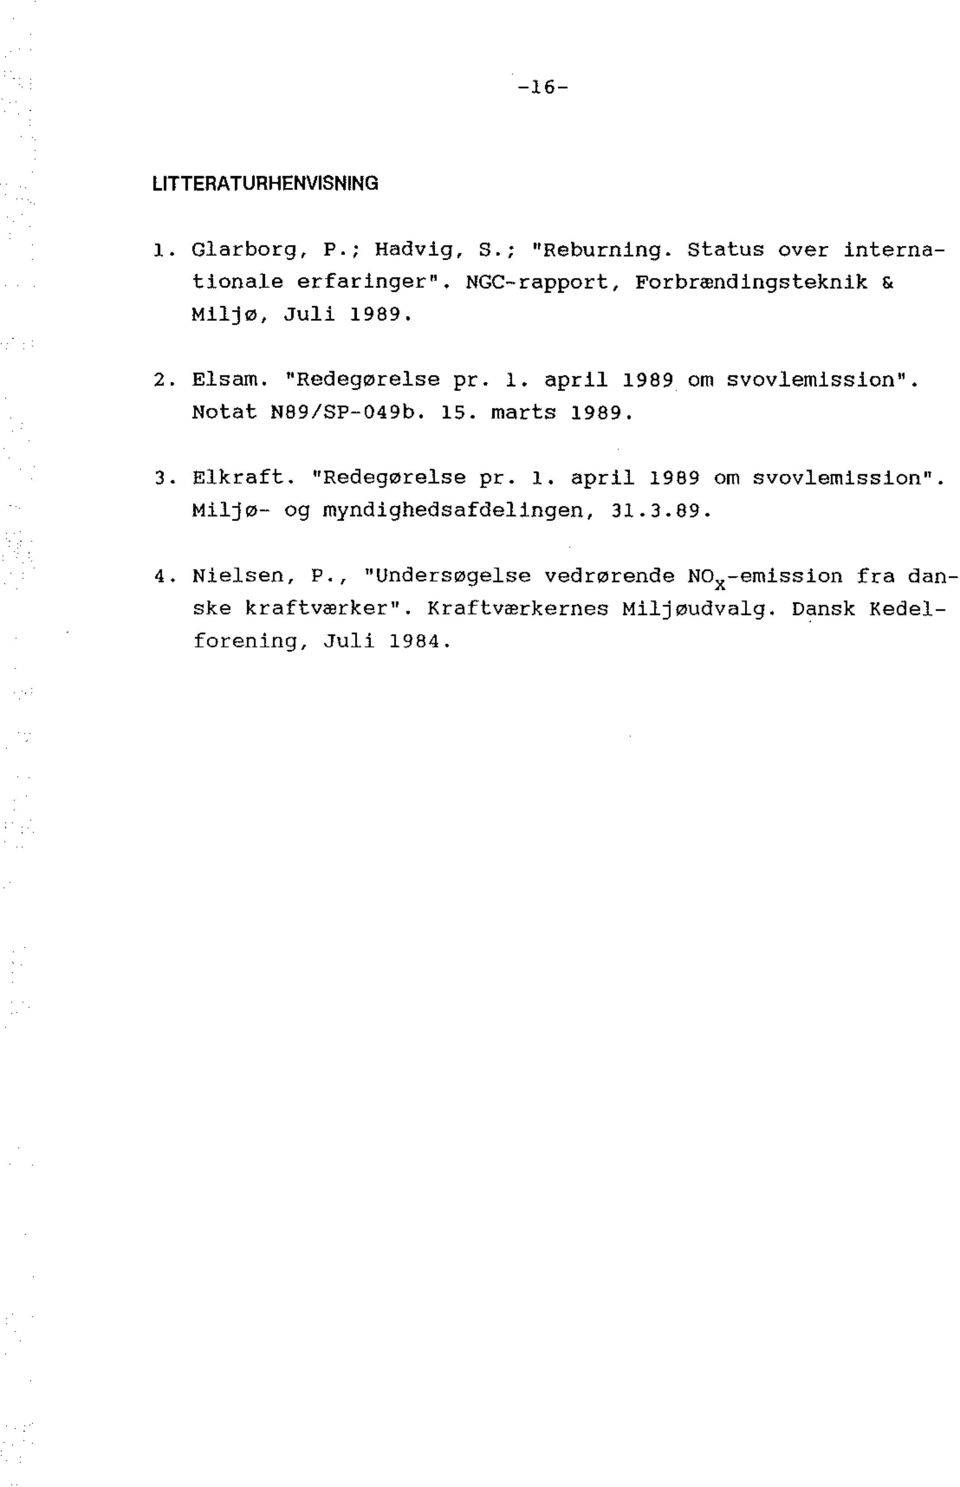 Notat N89/SP-049b. 15. marts 1989. 3. Elkraft. "Redeg0relse pr. 1. april 1989 om svovlemission".